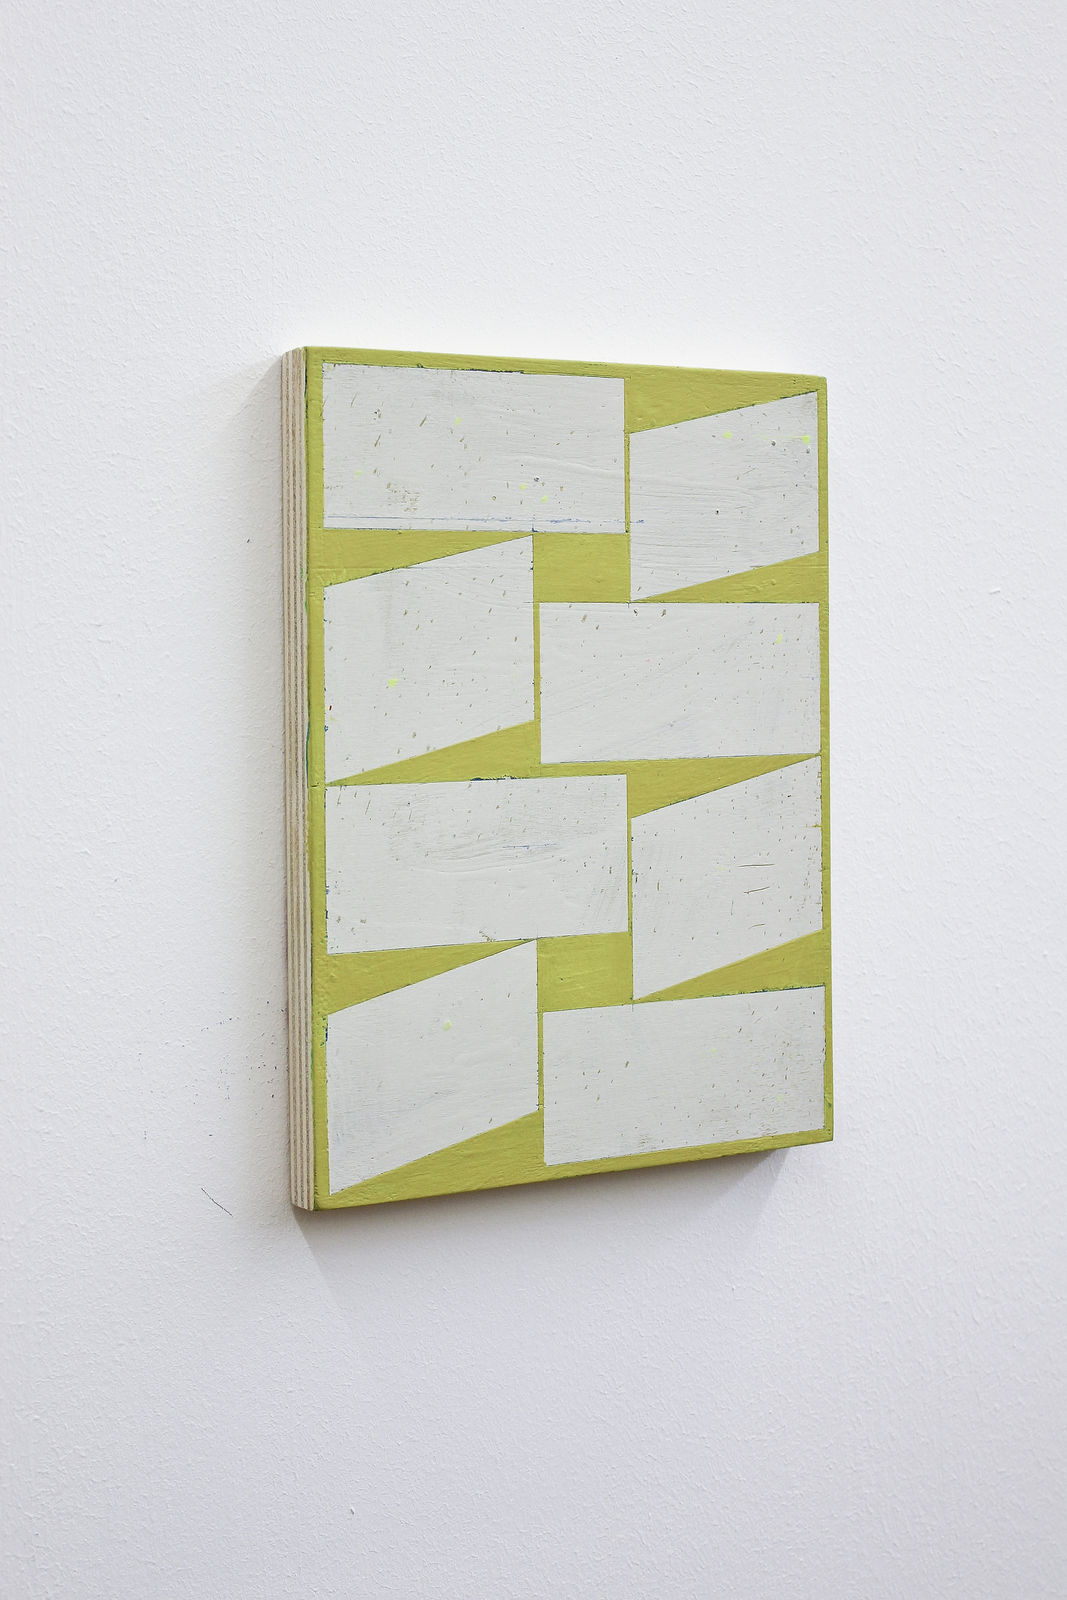 Alain Biltereyst at Van Der Mieden Gallery, Antwerp 01